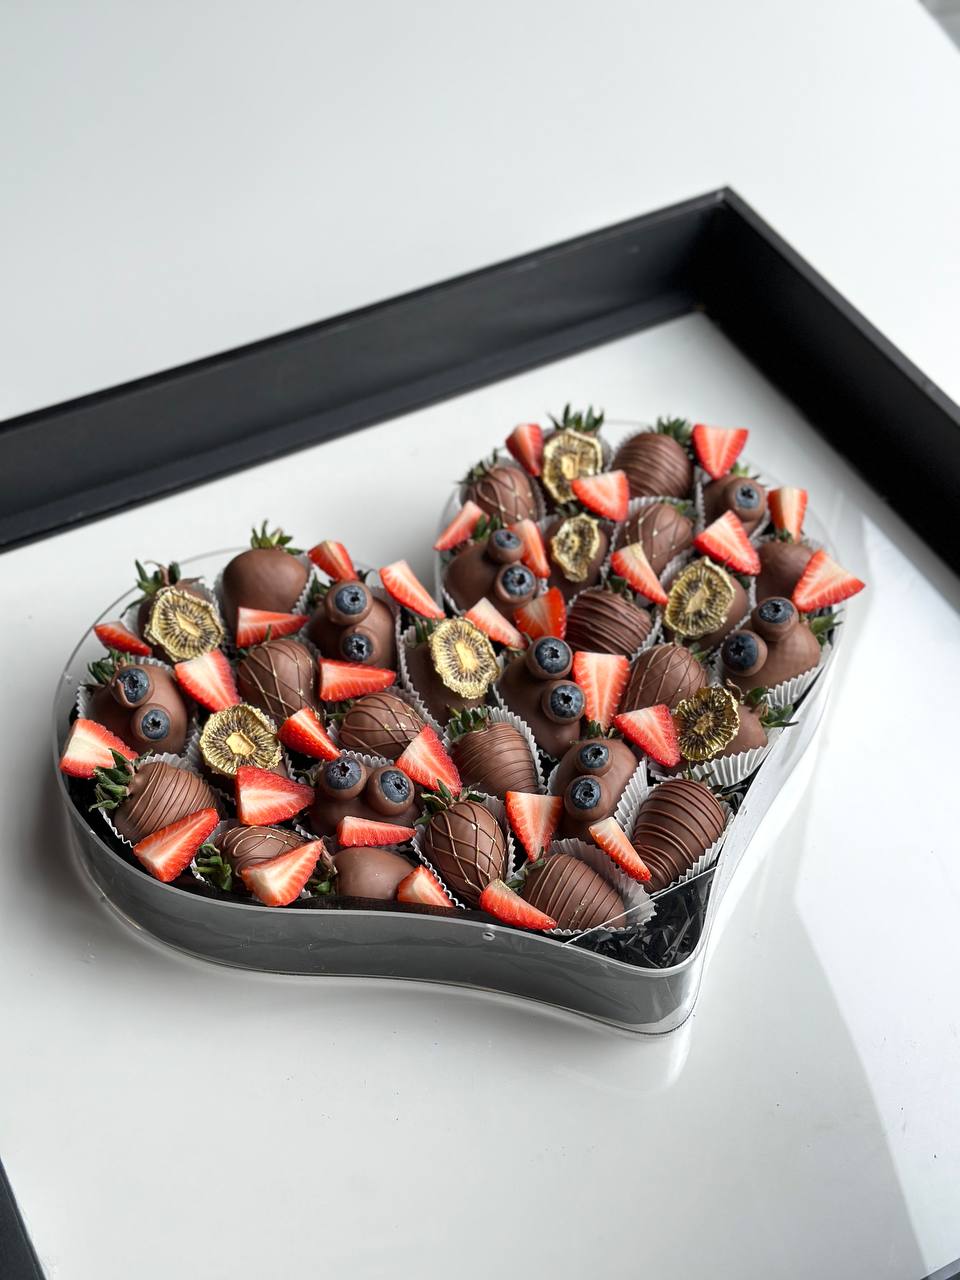 Клубничный бокс "Счастливый" L клубника в итальянском шоколаде с декором из свежей клубники и голубики в коробке в форме сердца